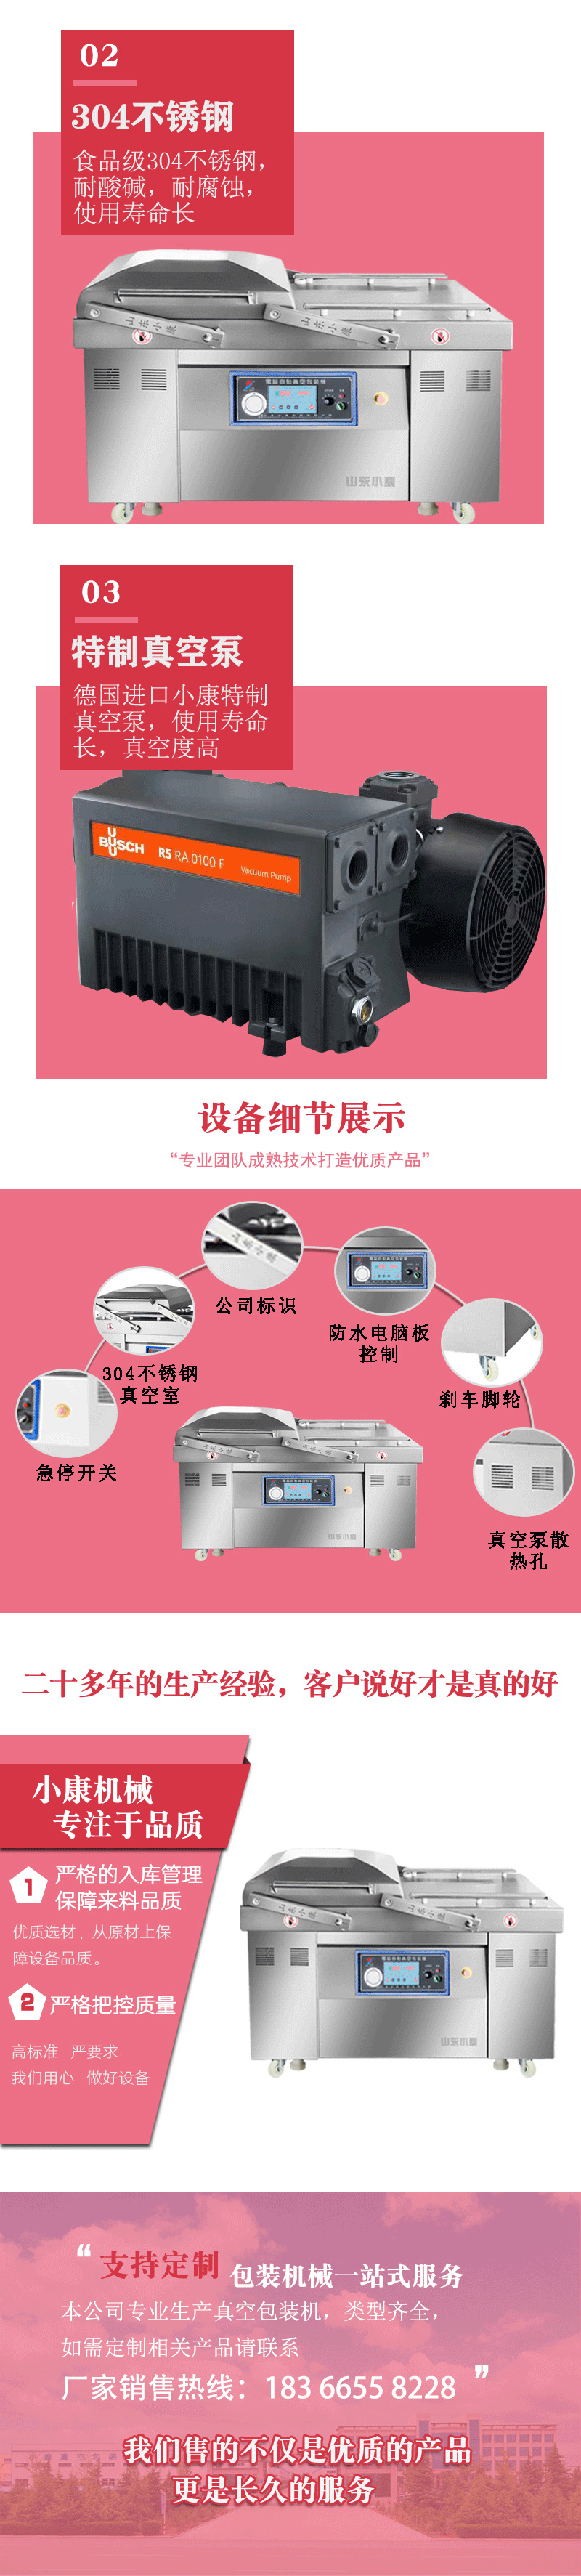 Xiaokang brand Vacuum packing double chamber vacuum sealing machine duck egg Vacuum packing equipment